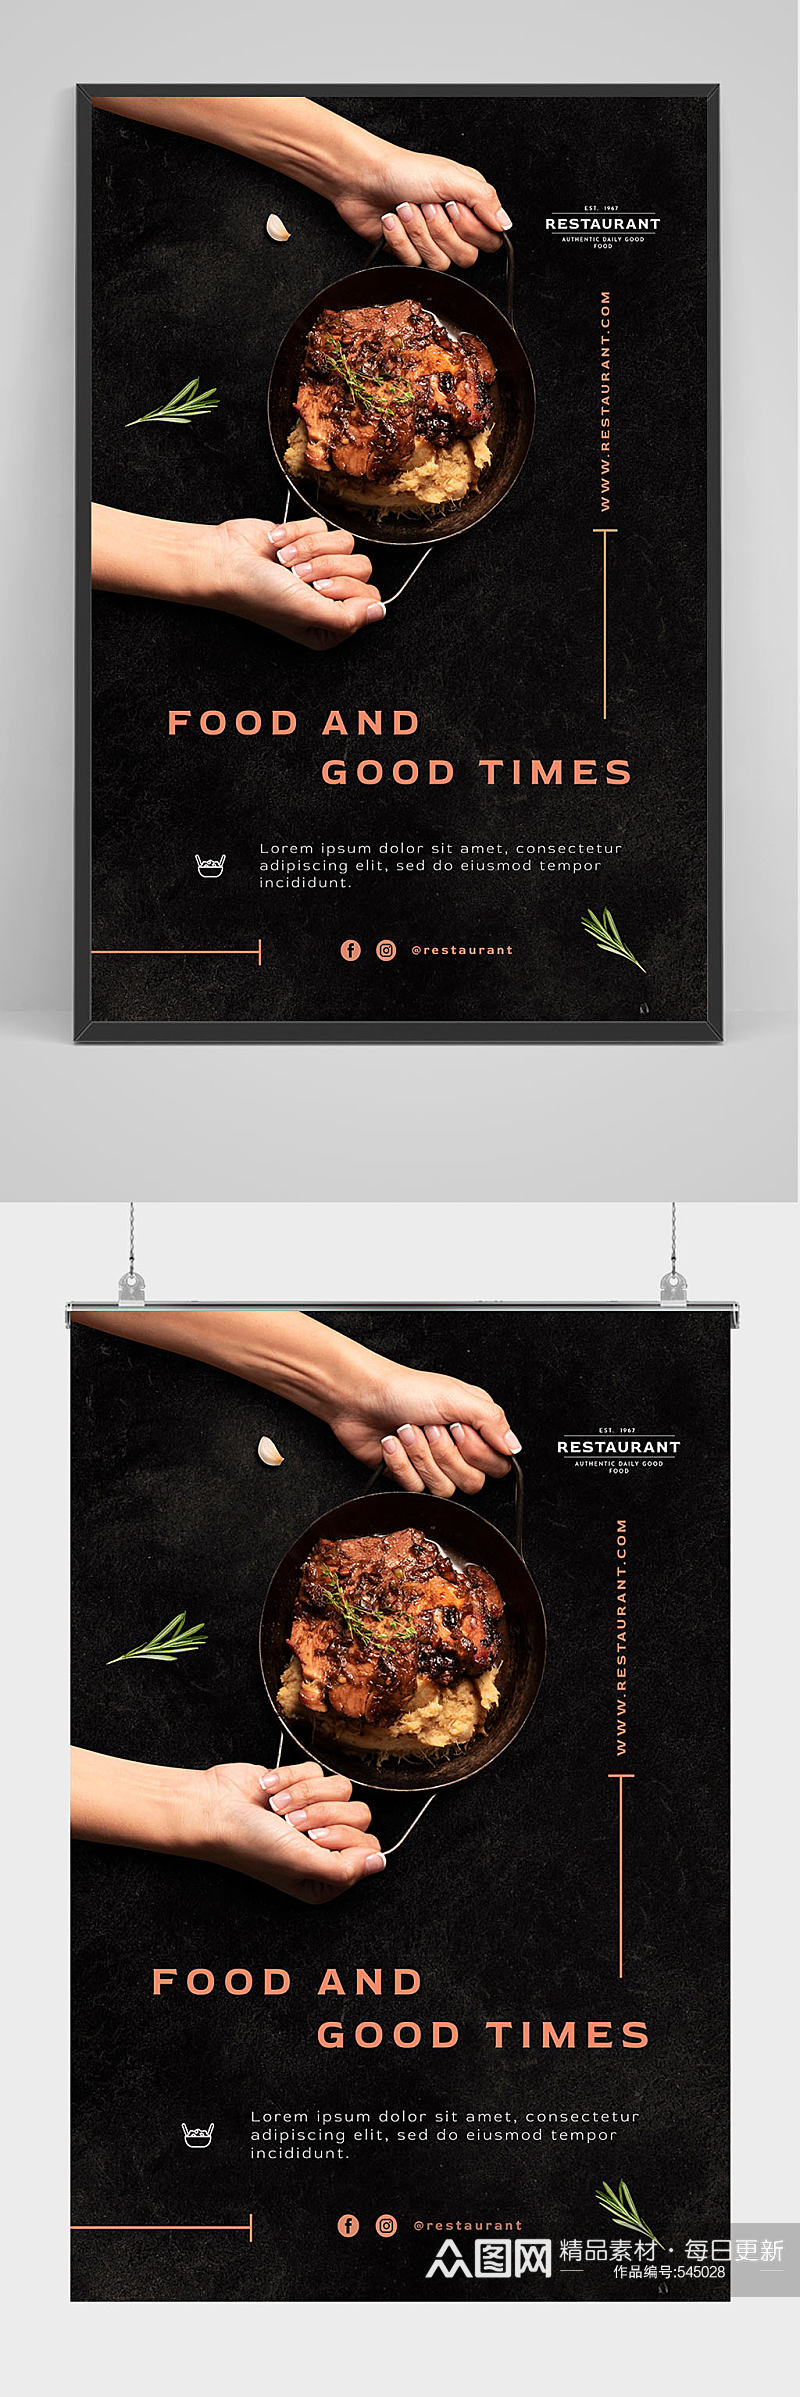 精品创意大气西餐美食海报设计素材